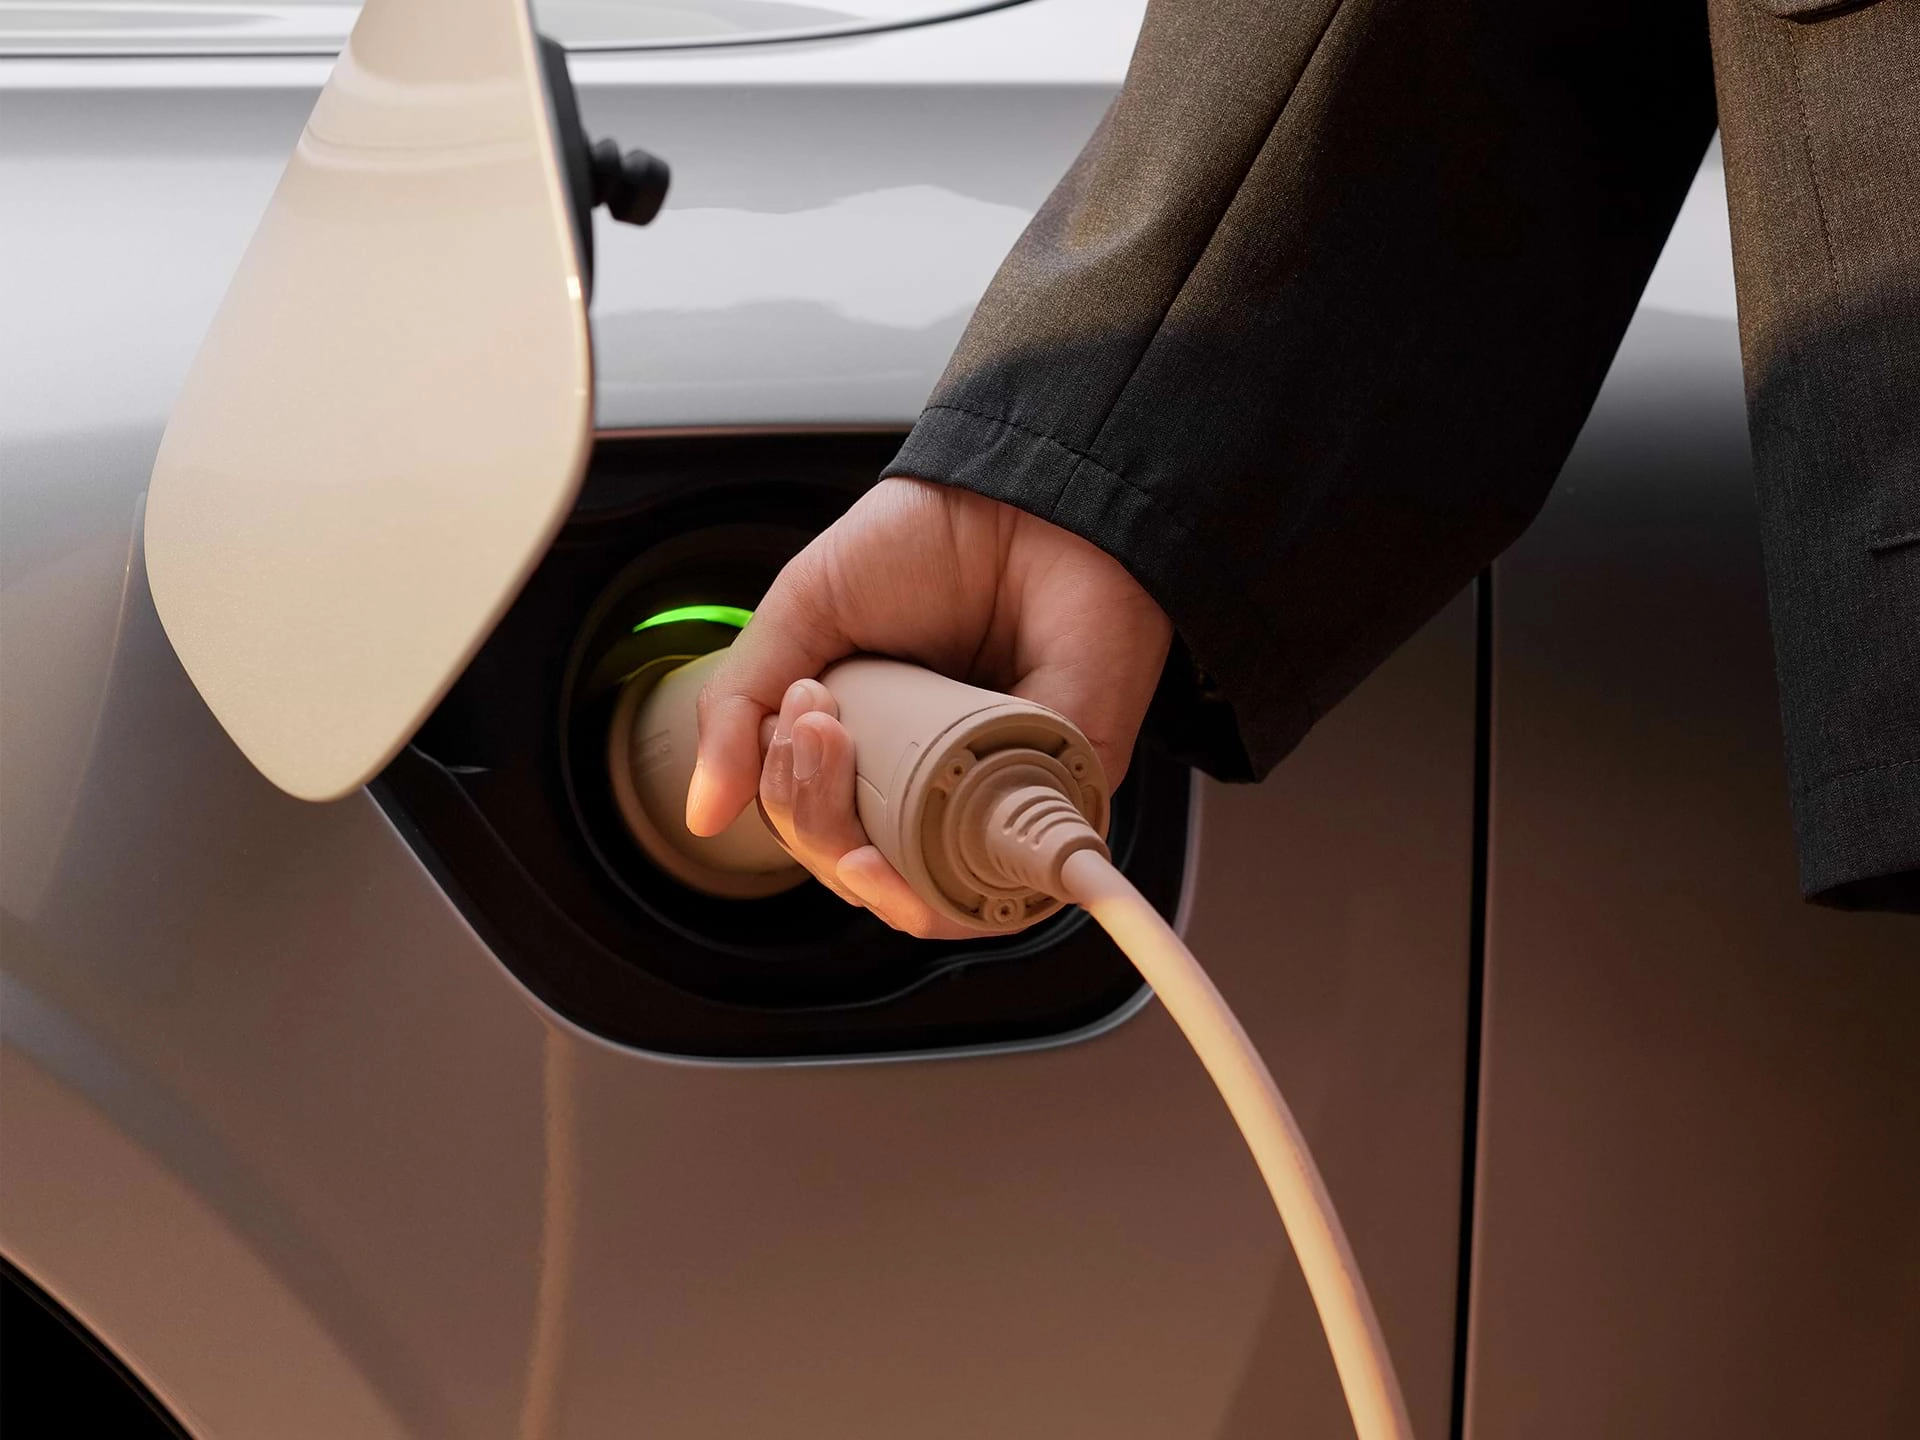 Снимок крупным планом руки мужчины, подключающей зарядное устройство к зарядному порту автомобиля Volvo.